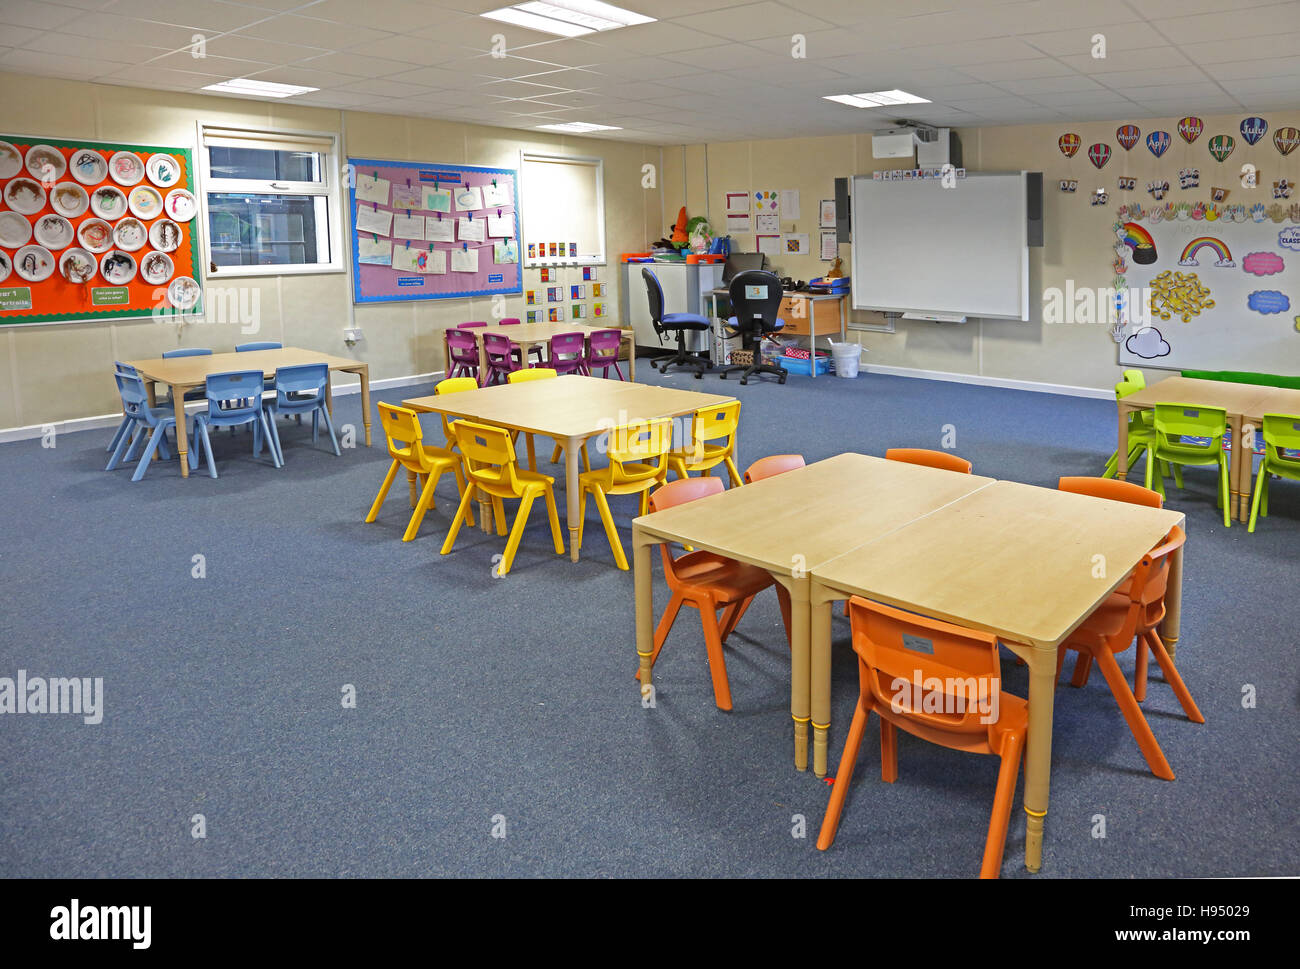 Innenansicht einer modernen Jahr 1 Schulklasse mit Tischen, Stühlen und Kunstwerke an Wänden in leuchtenden Farben Stockfoto